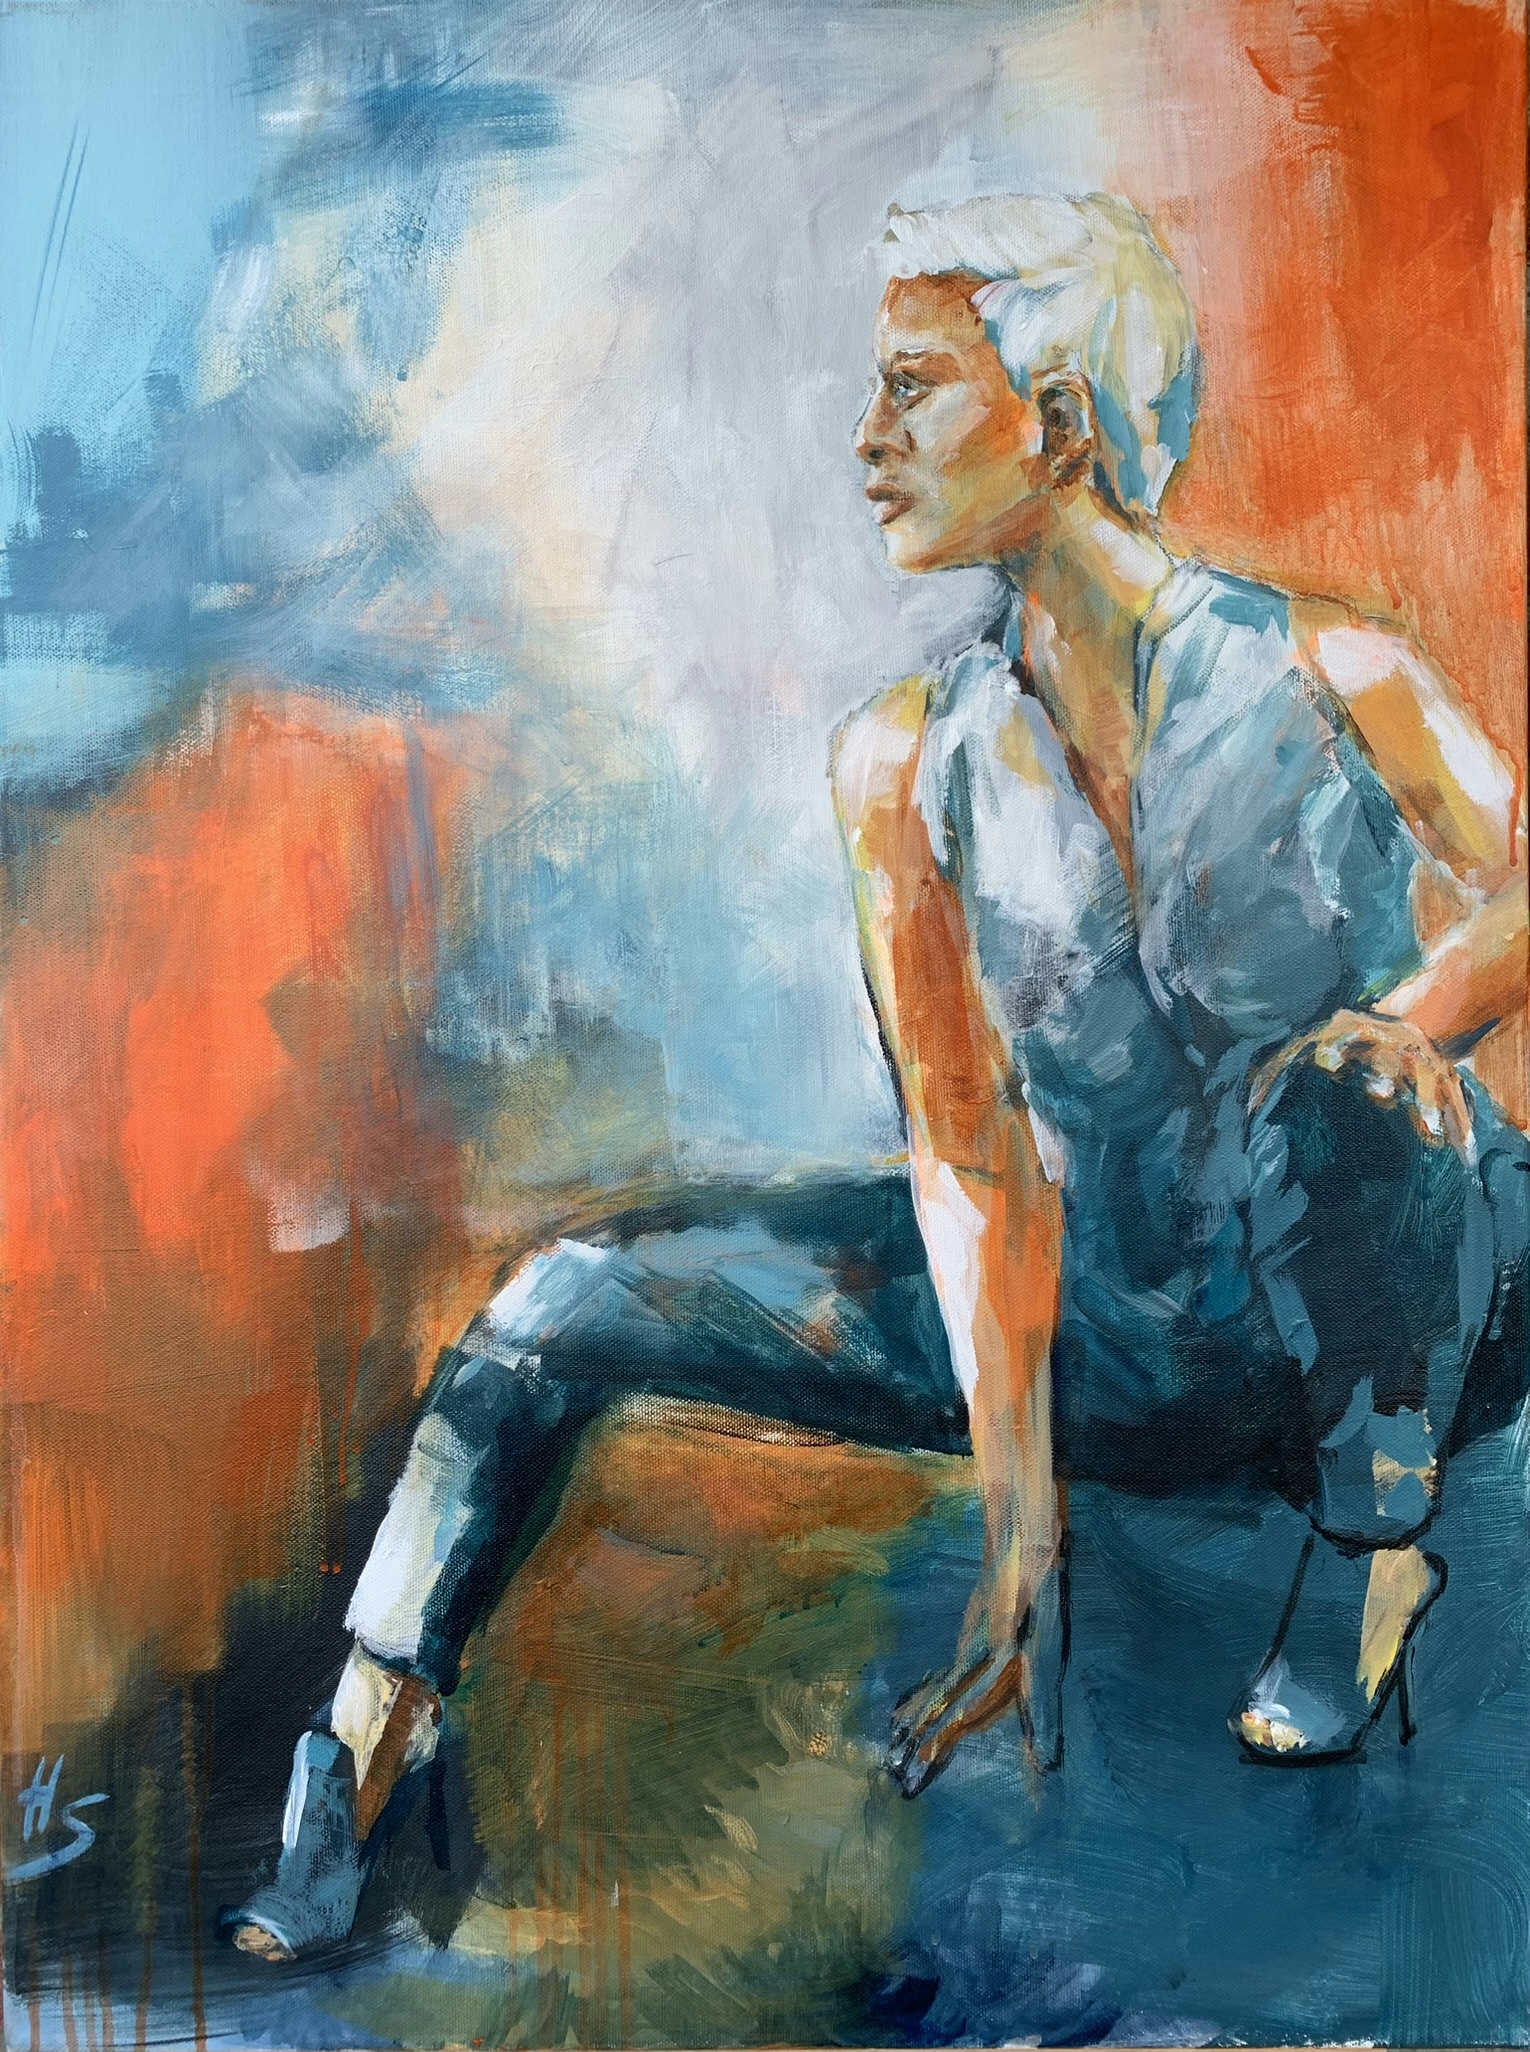 Artwork by Heike Schümann depicts a crouching woman